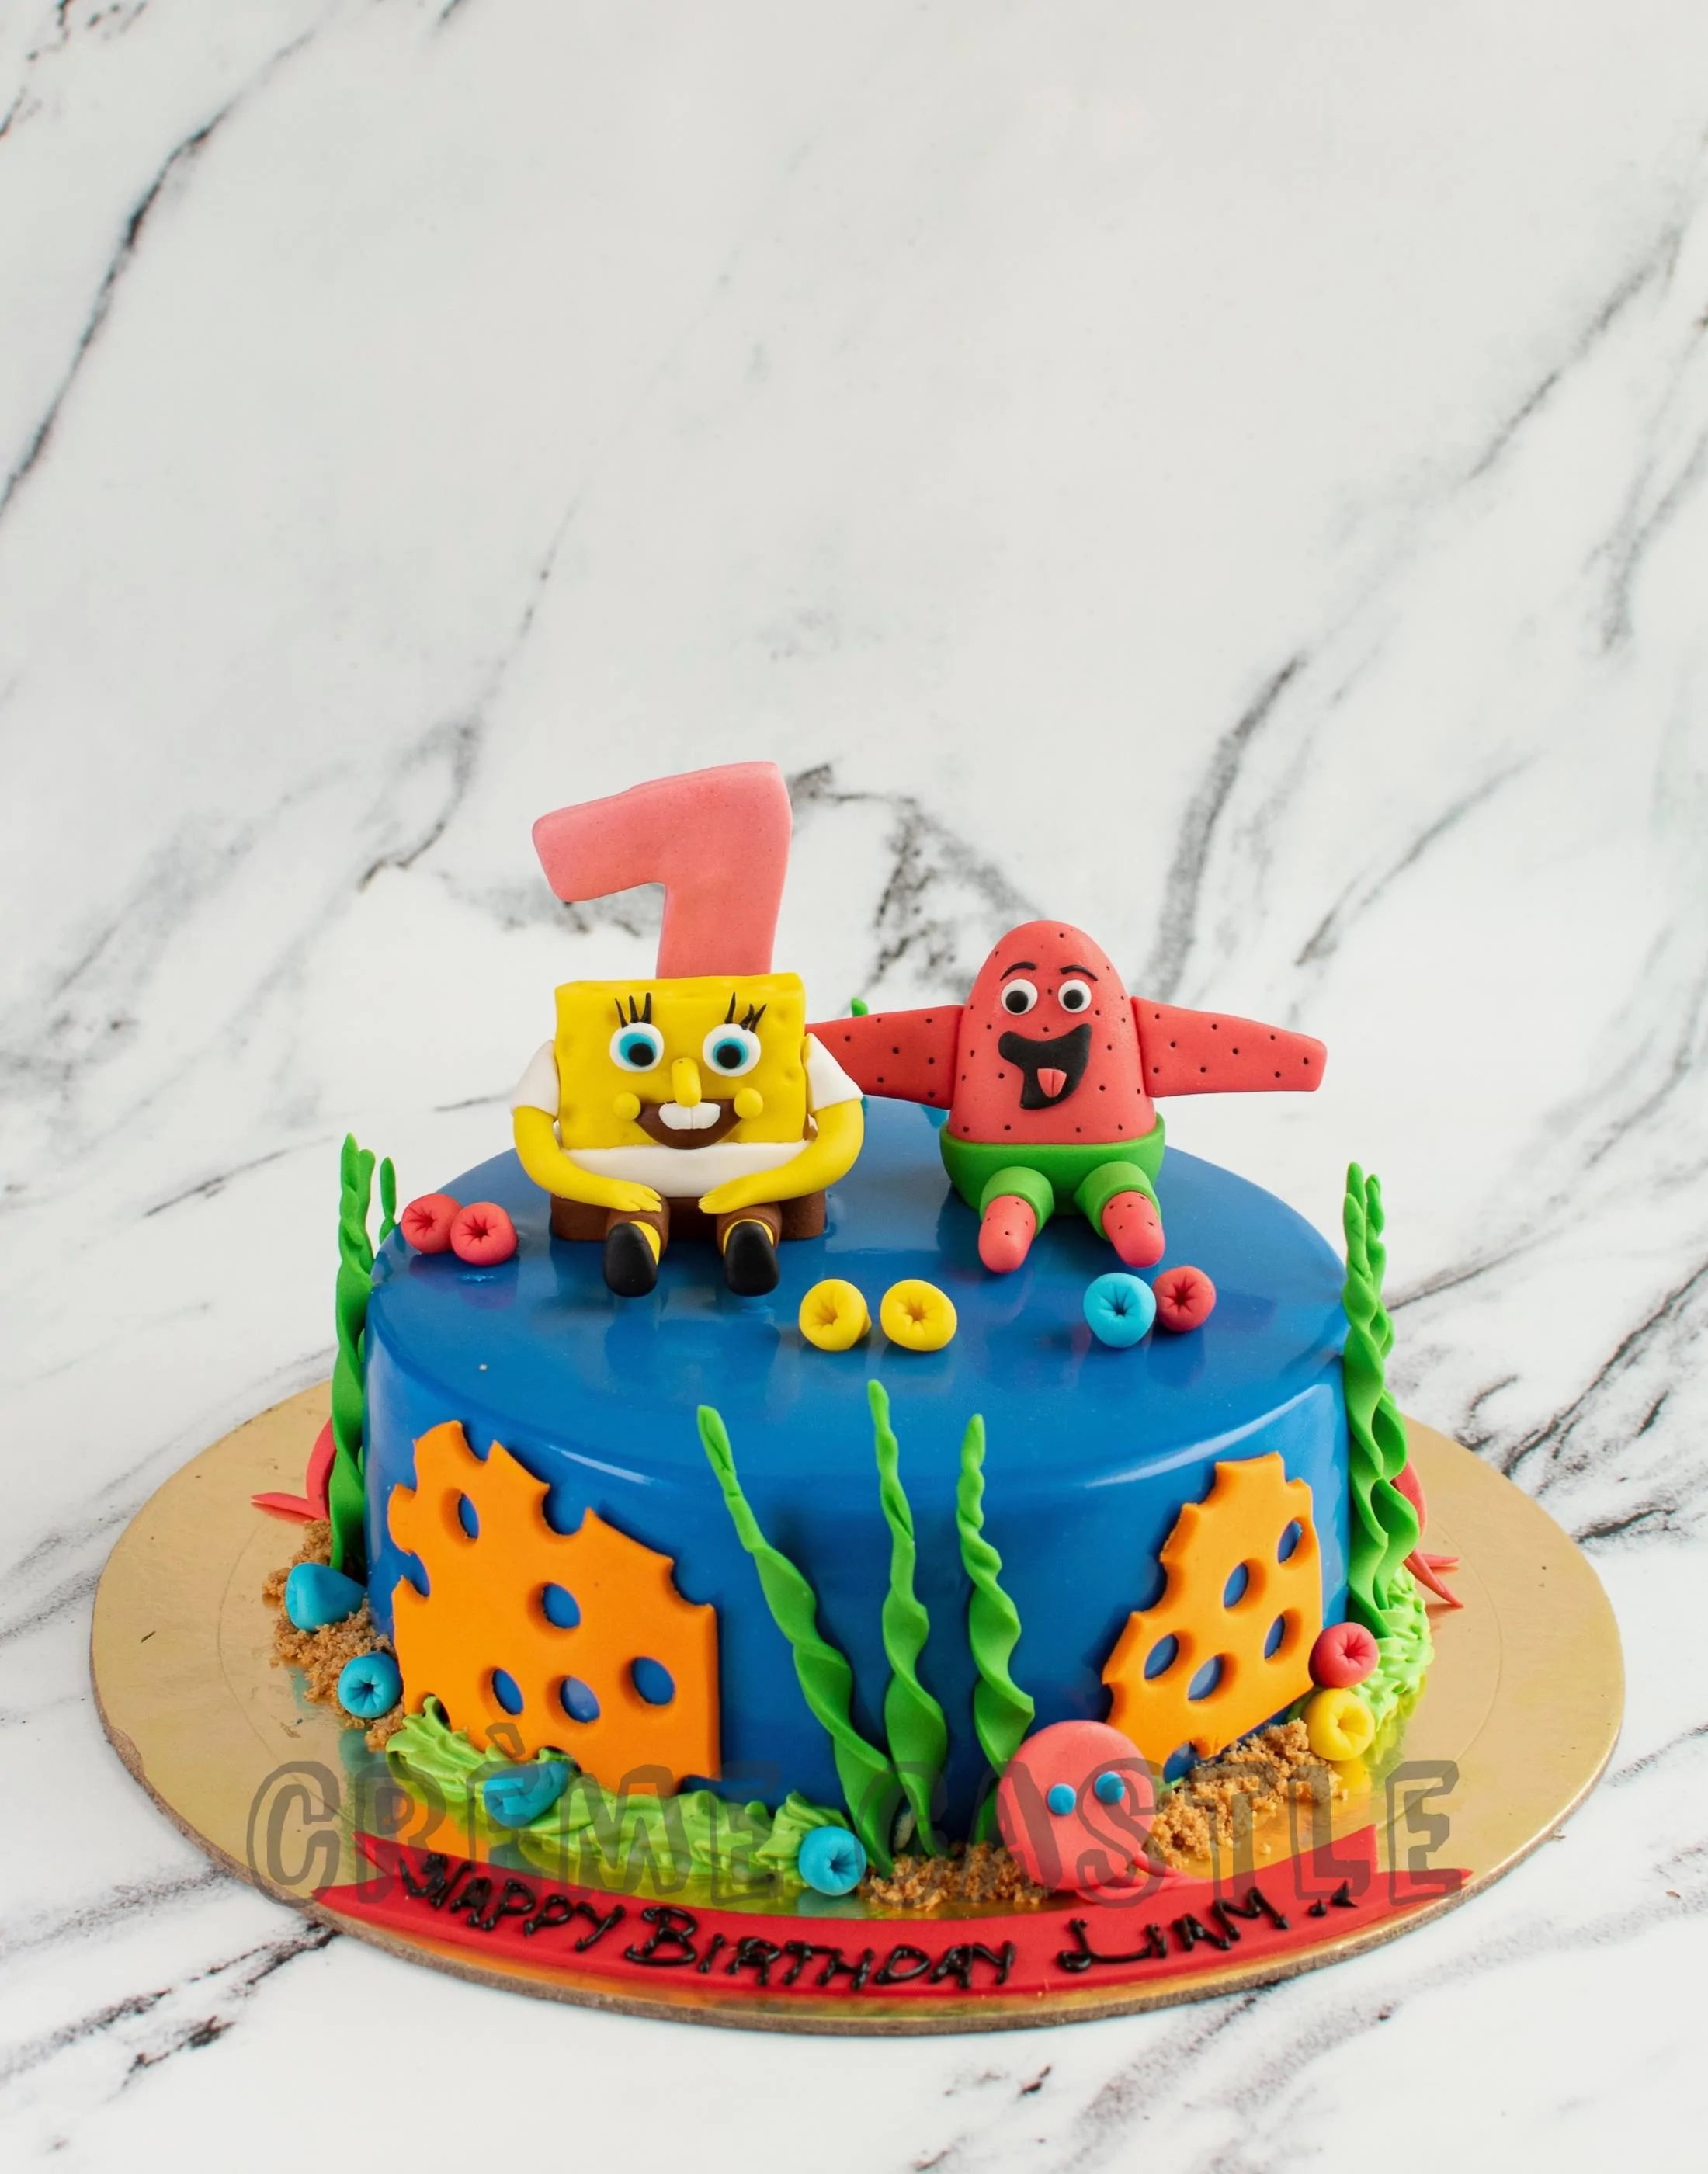 SpongeBob SquarePants Layer Cake - Classy Girl Cupcakes